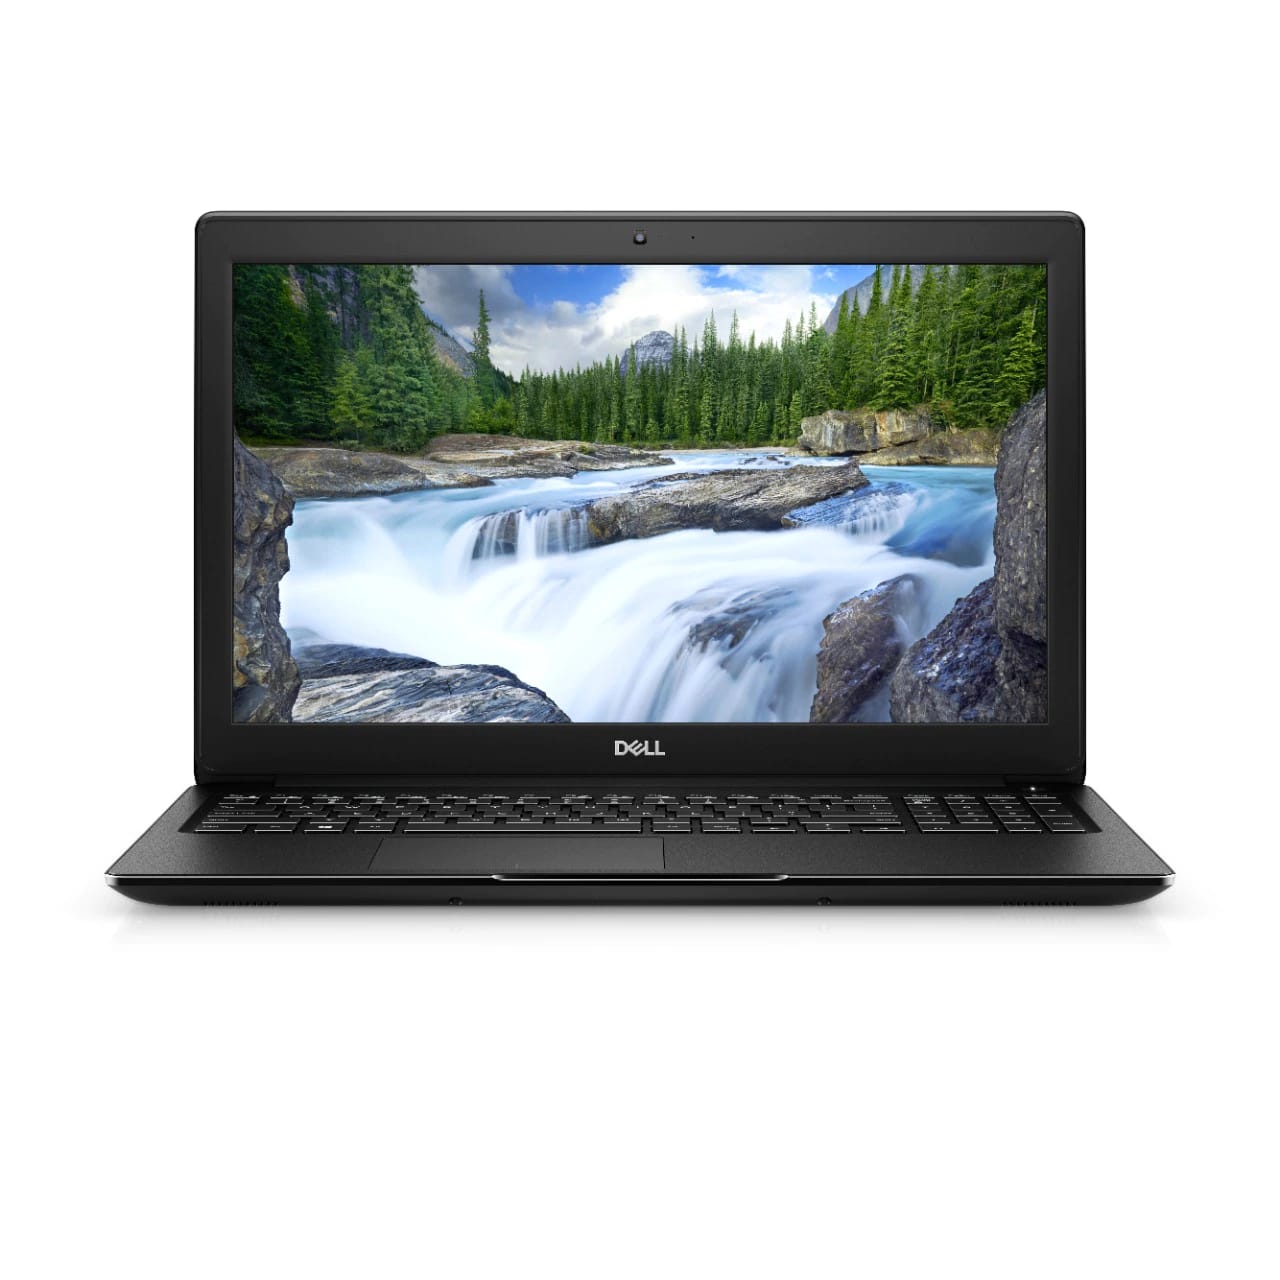 BSB-Y85Z2J40LZJD7W31-NEW-NEW-LAP-DL 2019 Dell Latitude 3500 Laptop 15.6" - i5 - i5-8265U - Quad Core 3.9Ghz - 256GB SSD - 8GB RAM - 1920x1080 FHD - Windows 10 Pro Black